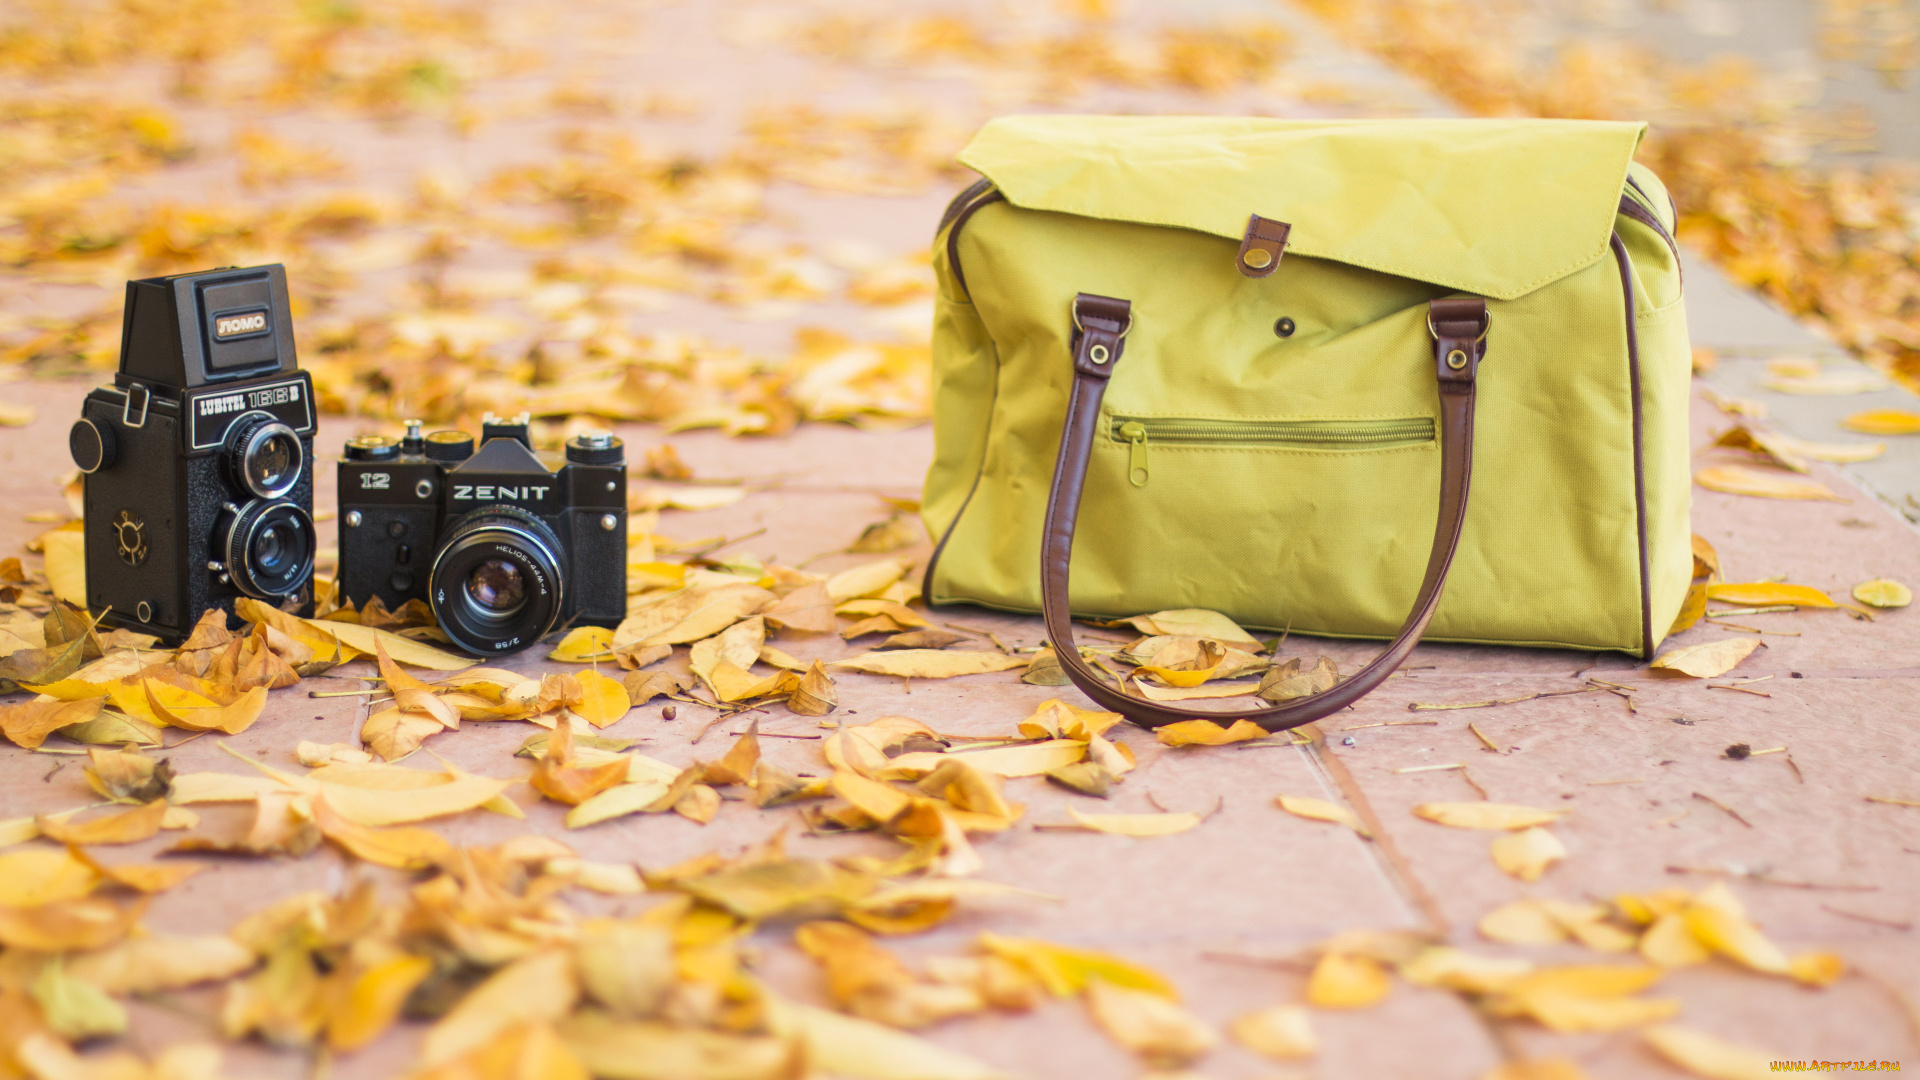 бренды, зенит, осень, камера, фотоаппарат, листья, сумка